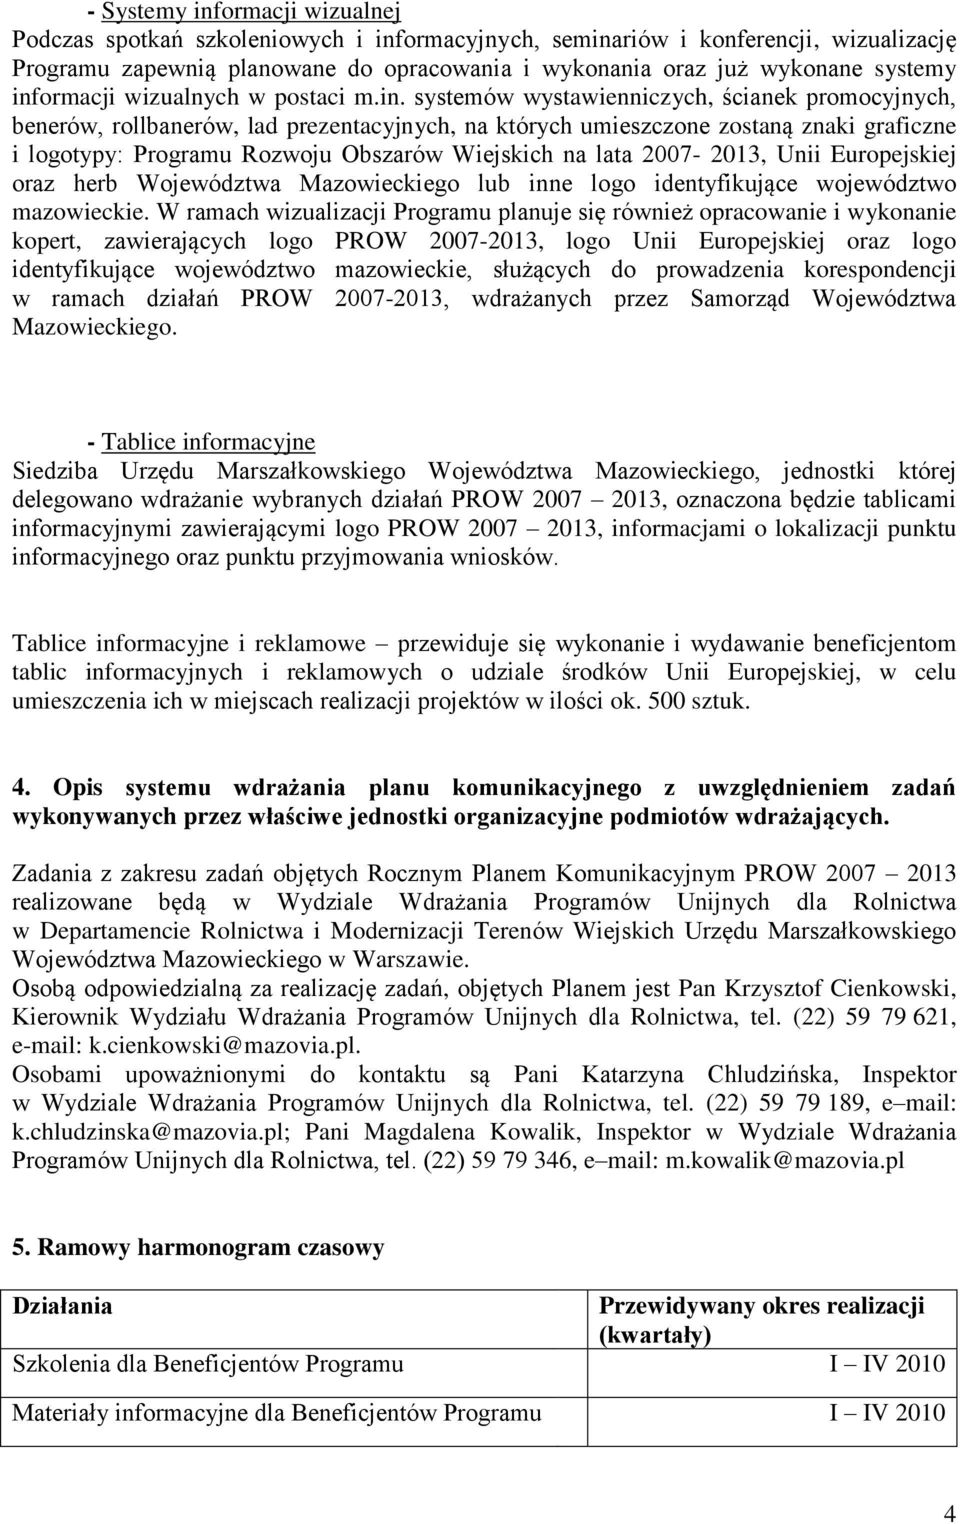 Rozwoju Obszarów Wiejskich na lata 2007-2013, Unii Europejskiej oraz herb Województwa Mazowieckiego lub inne logo identyfikujące województwo mazowieckie.